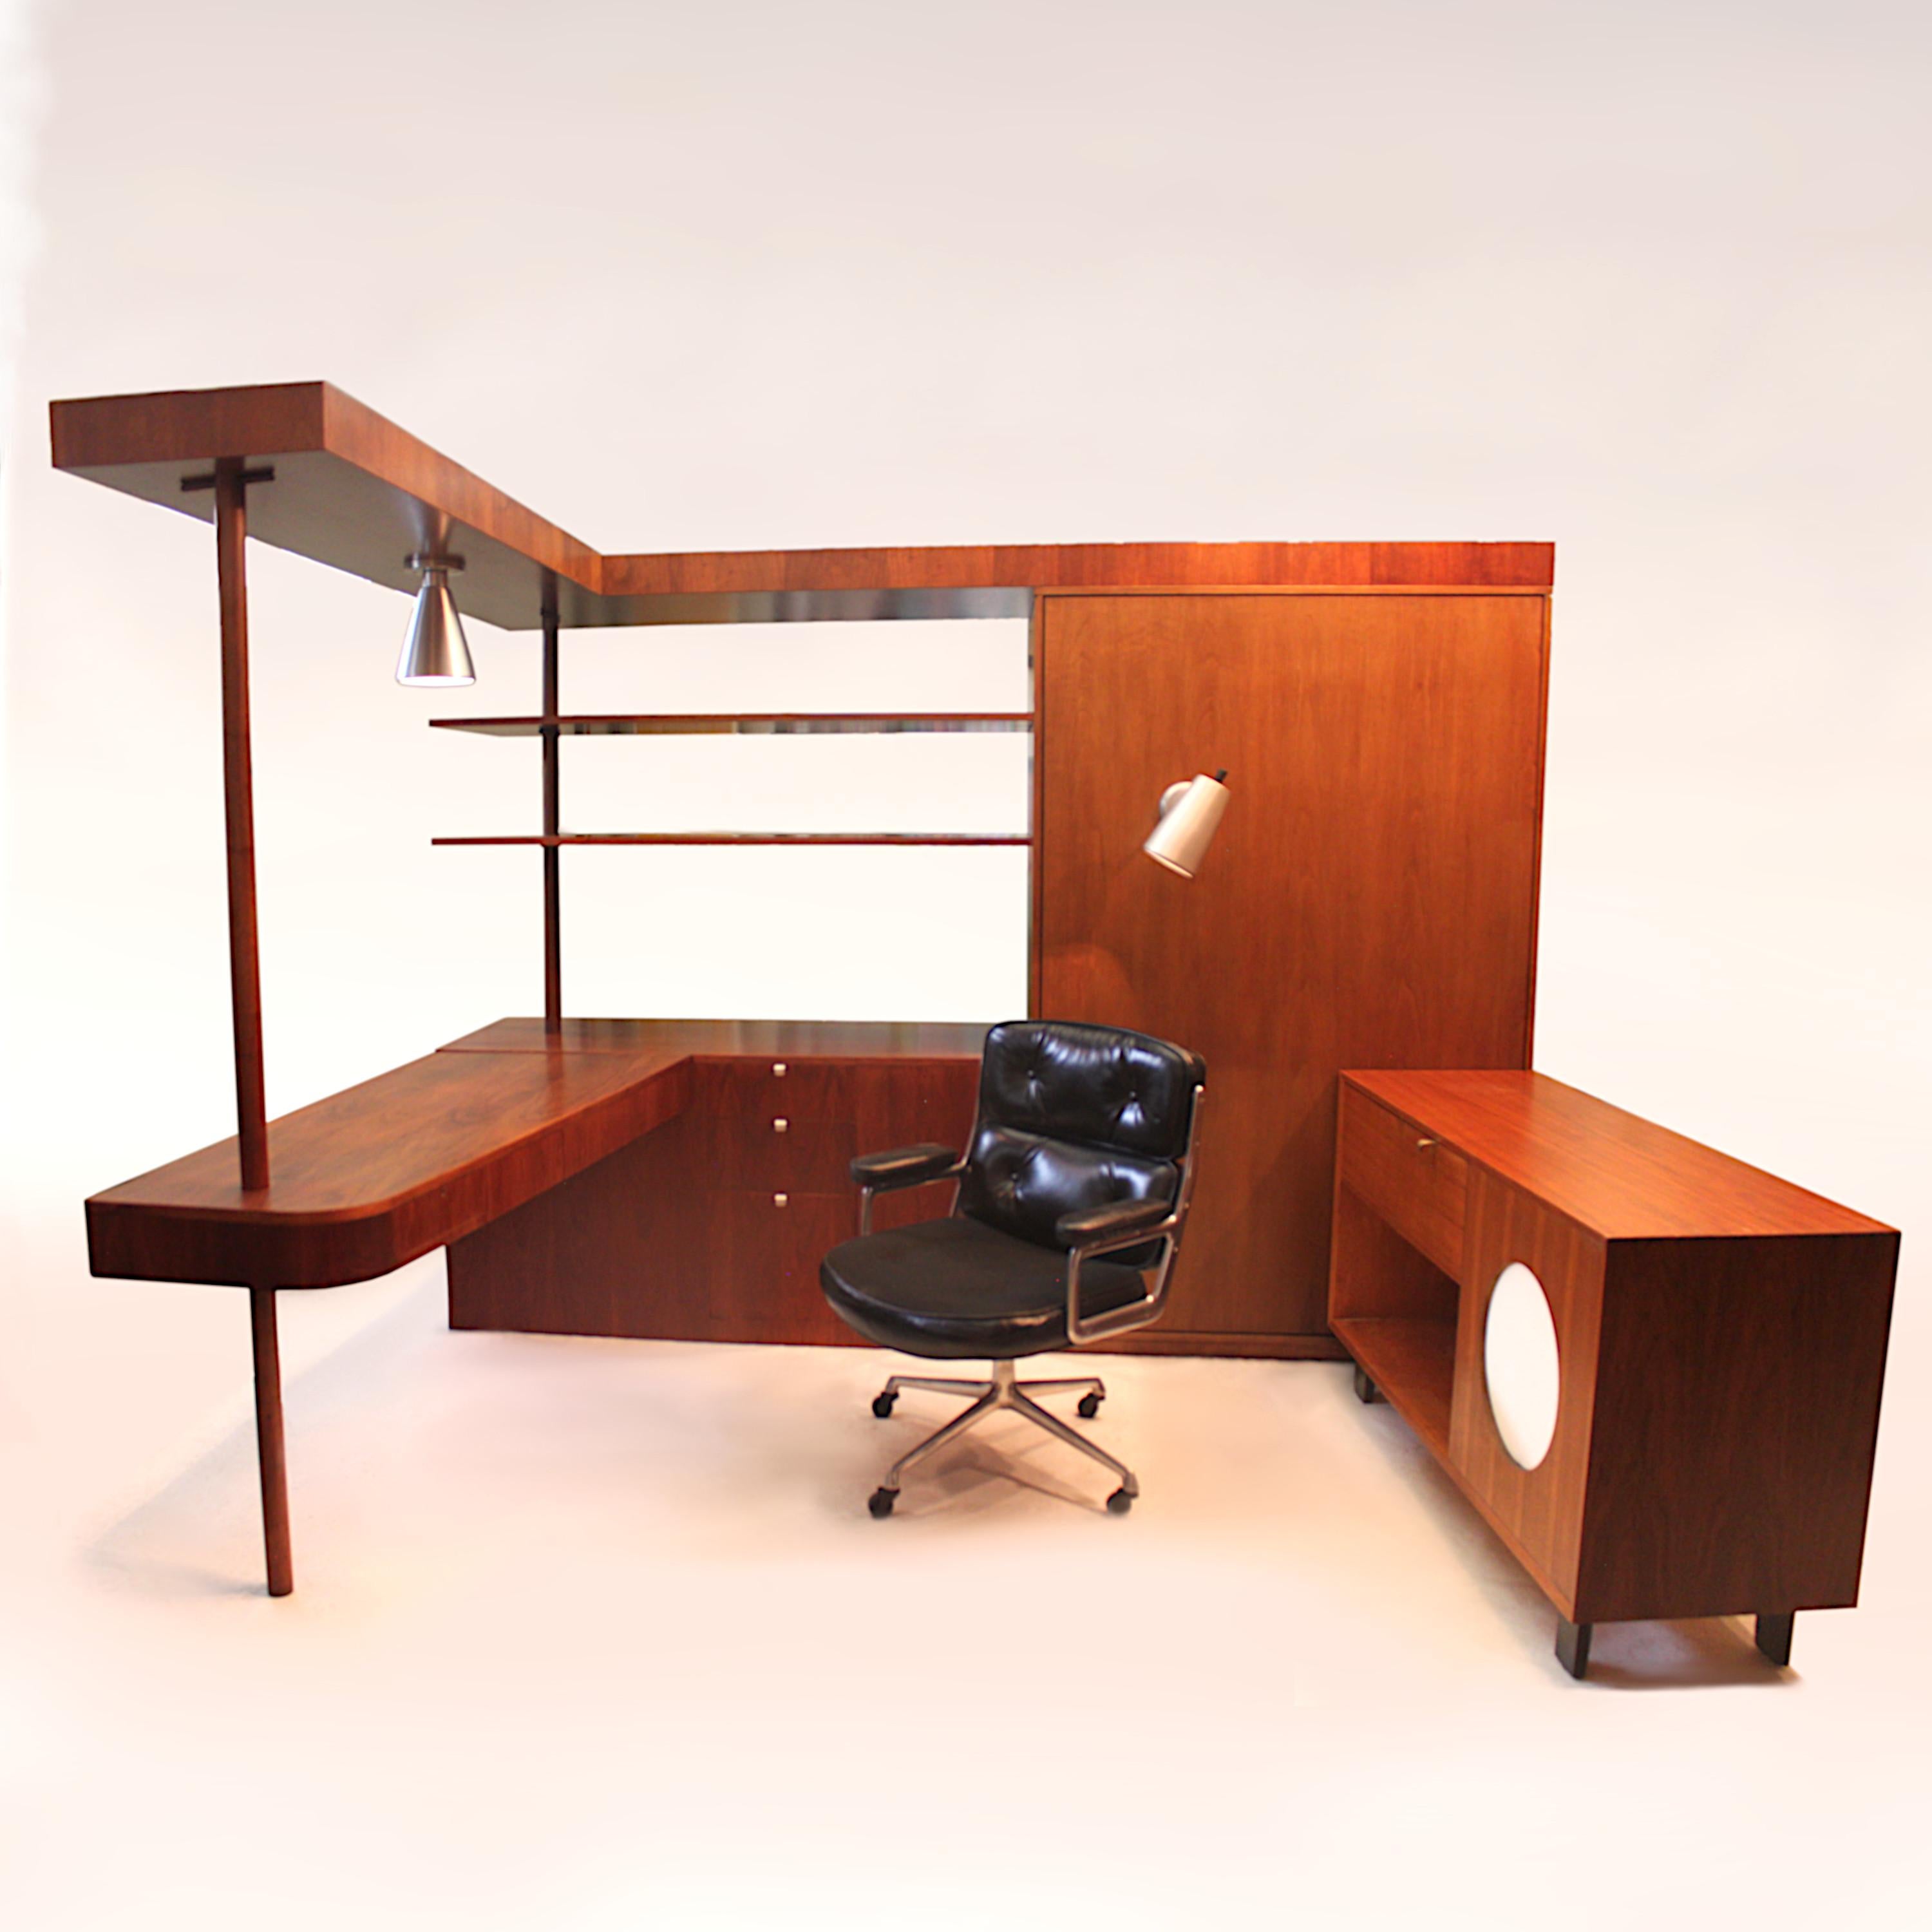 Bei diesem bemerkenswerten Stück handelt es sich um ein Einzelstück eines Schreibtischs, einer Garderobe, einer Bar, eines Bücherschranks und eines Stauraums, das George Nelson 1949 für seine Basic Cabinet Series (BCS) für Herman Miller entworfen